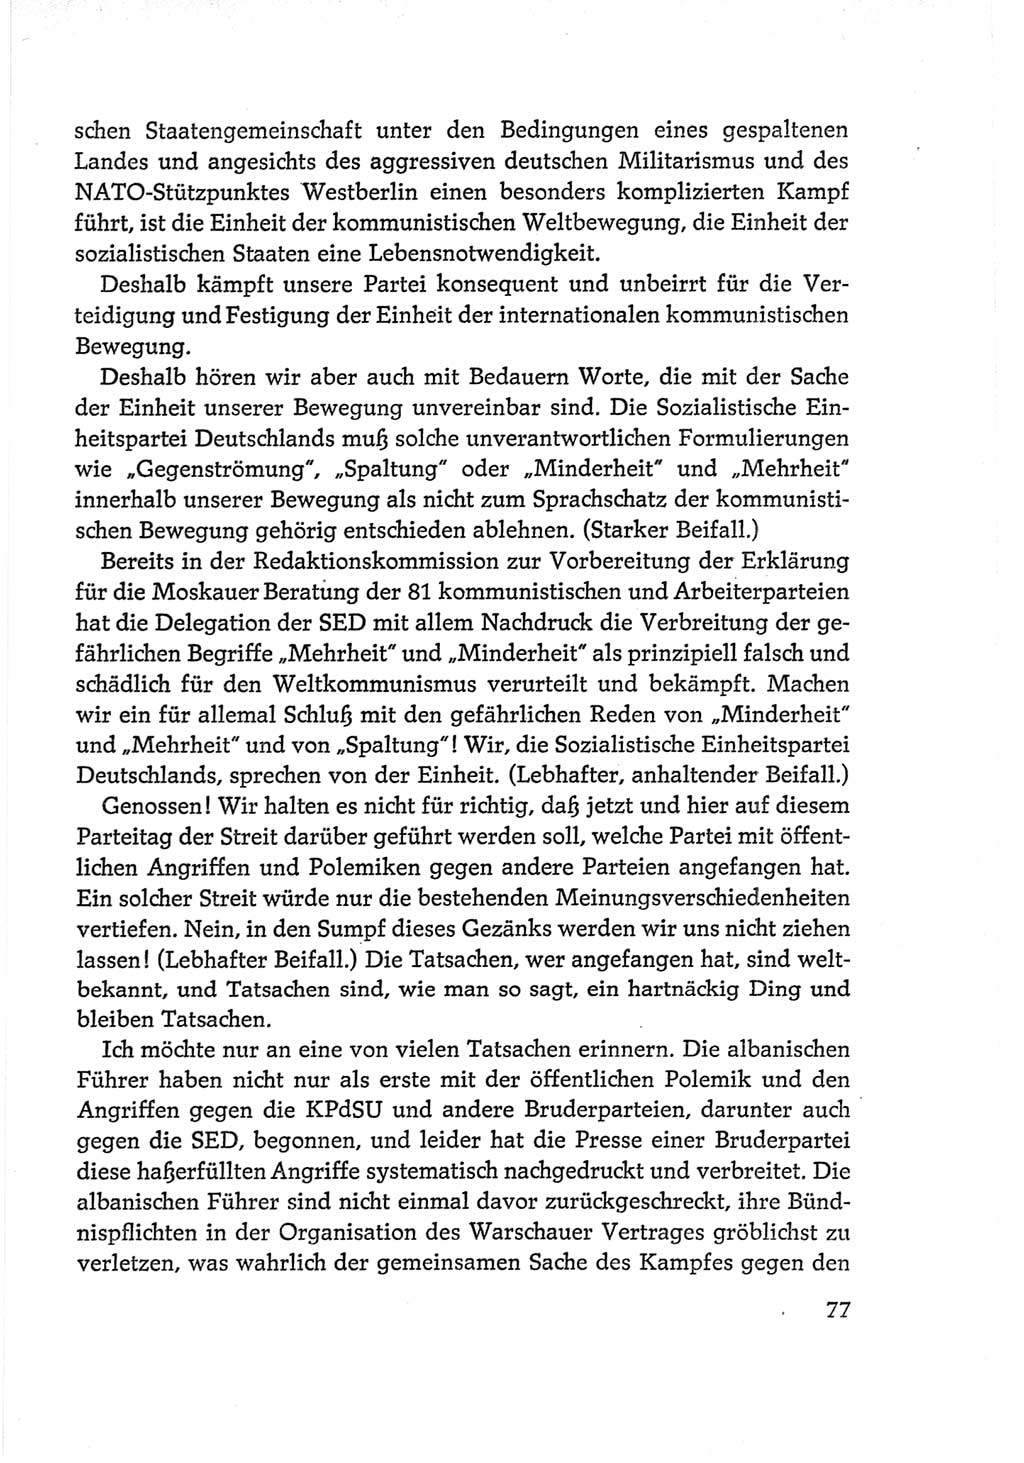 Protokoll der Verhandlungen des Ⅵ. Parteitages der Sozialistischen Einheitspartei Deutschlands (SED) [Deutsche Demokratische Republik (DDR)] 1963, Band Ⅱ, Seite 77 (Prot. Verh. Ⅵ. PT SED DDR 1963, Bd. Ⅱ, S. 77)